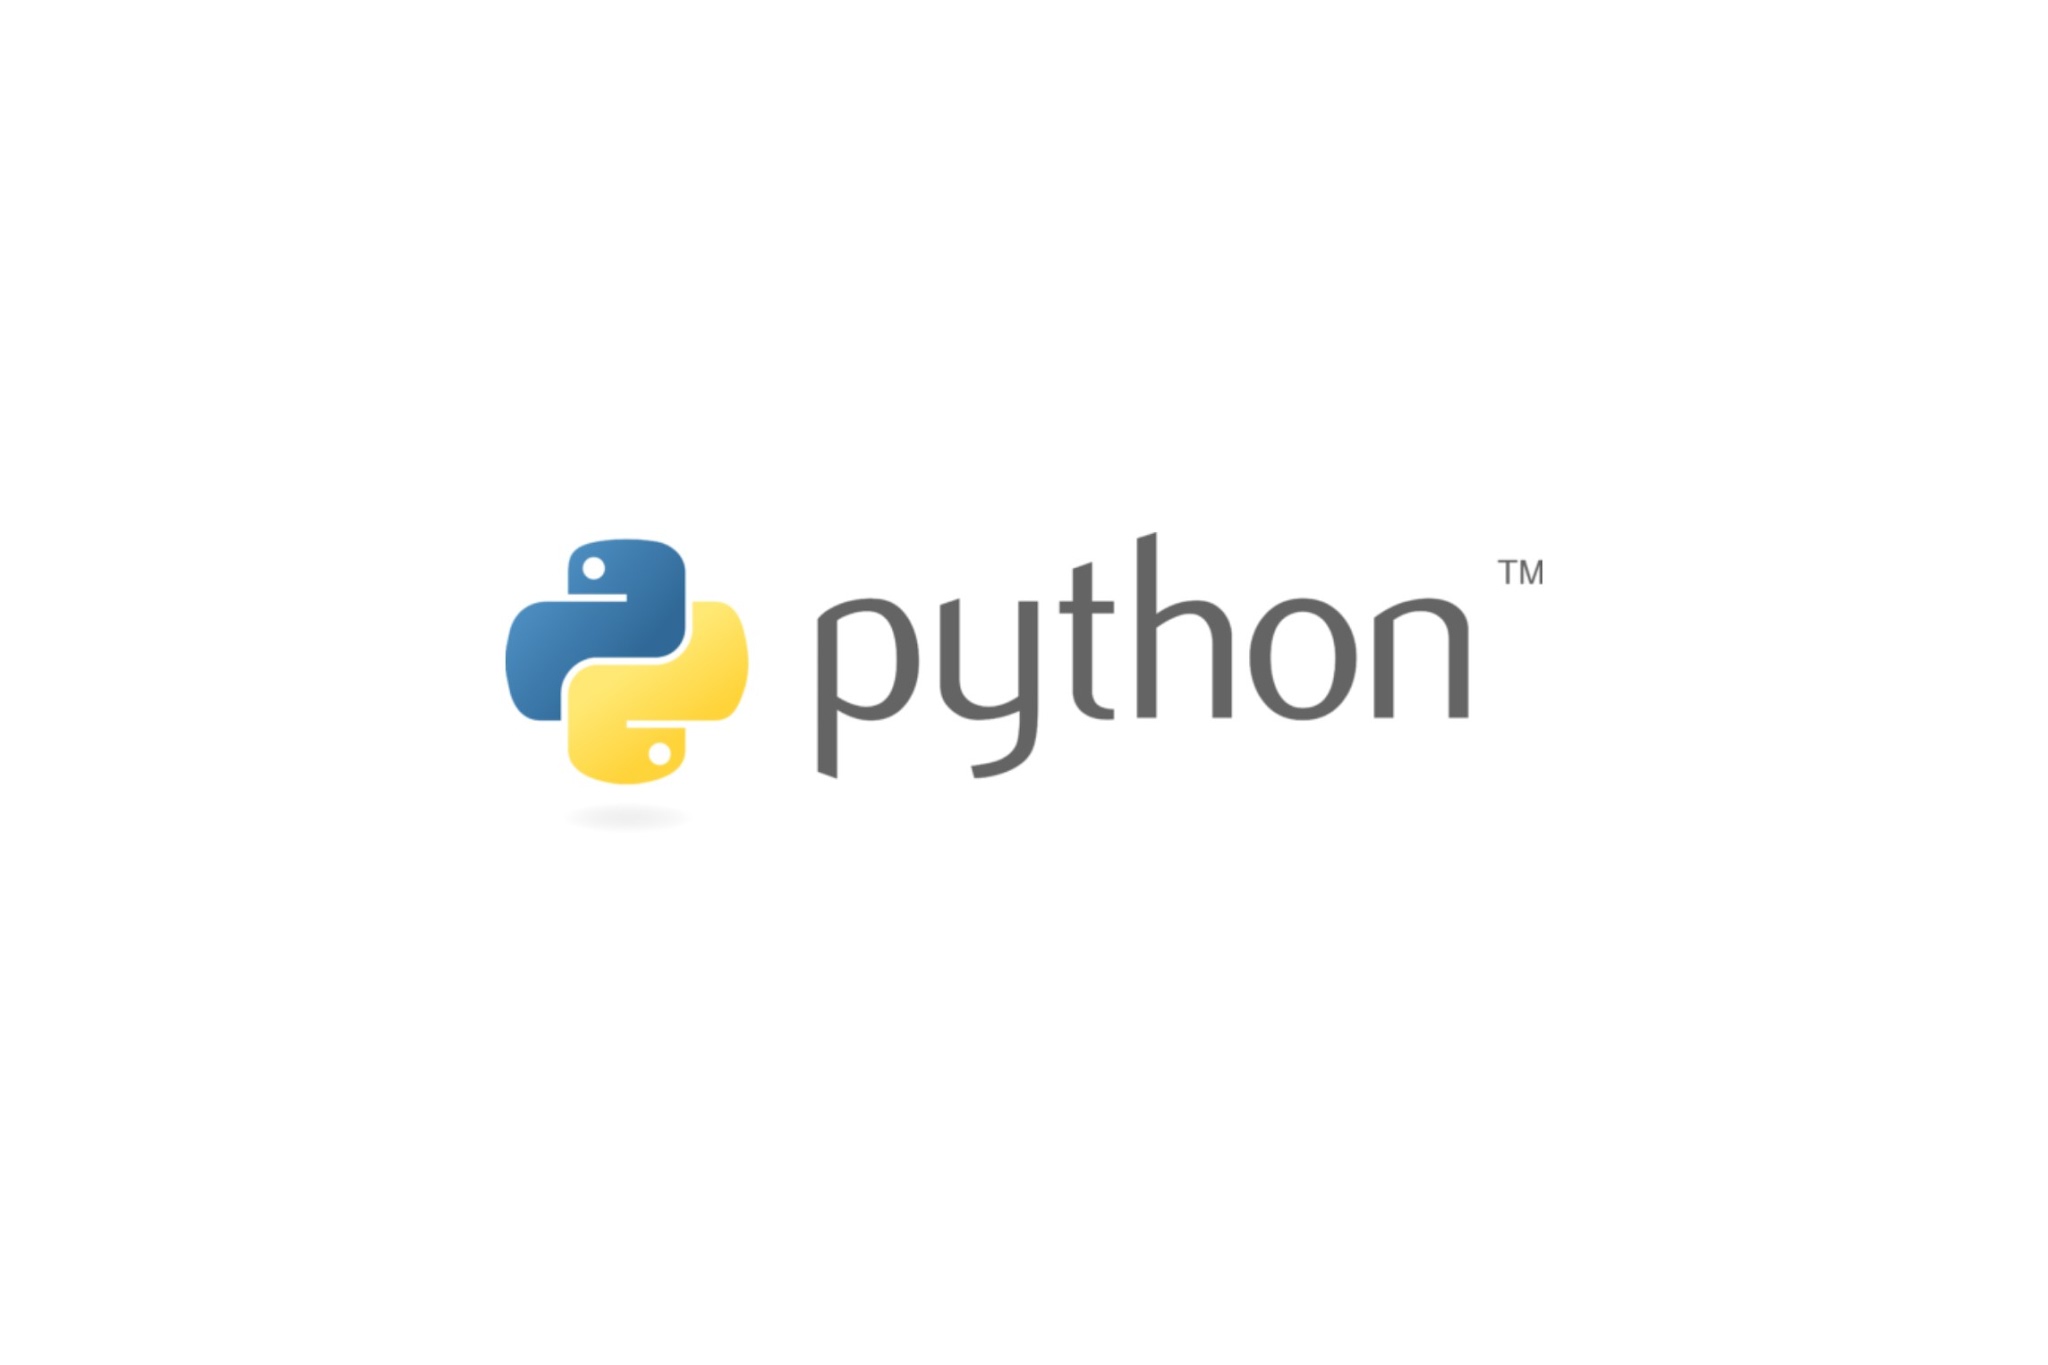 Логотип языка python. Питон программирование на прозрачном фоне. Python без фона. Значок Python. Python логотип на прозрачном фоне.